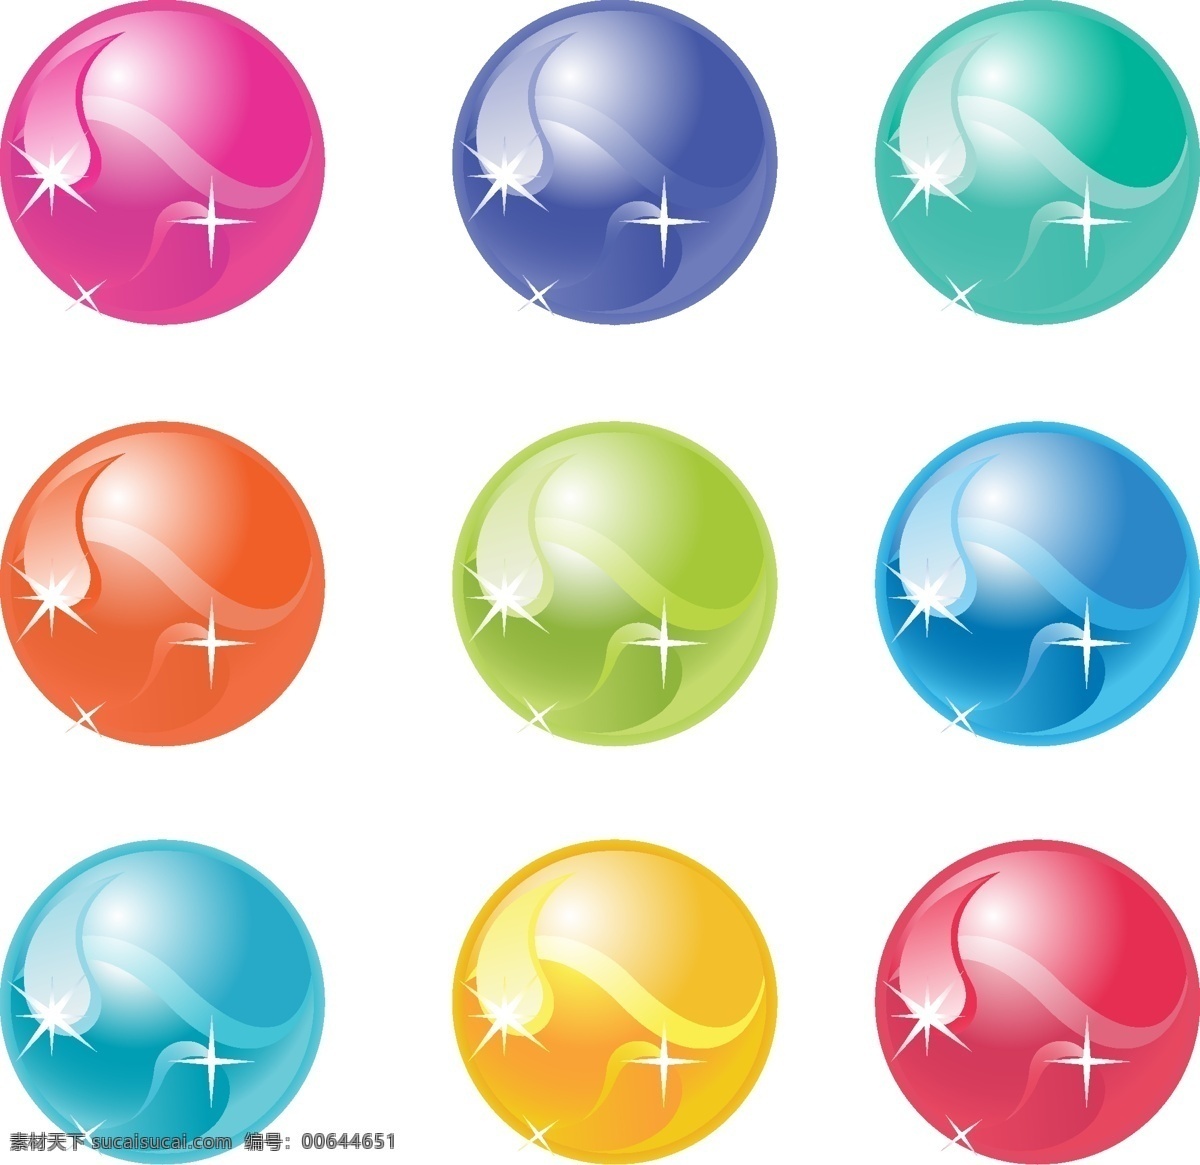 彩色玻璃球 彩色 玻璃球 玻璃球图标 水晶球 矢量 矢量素材 图标 标志 标签 logo 小图标 标识标志图标